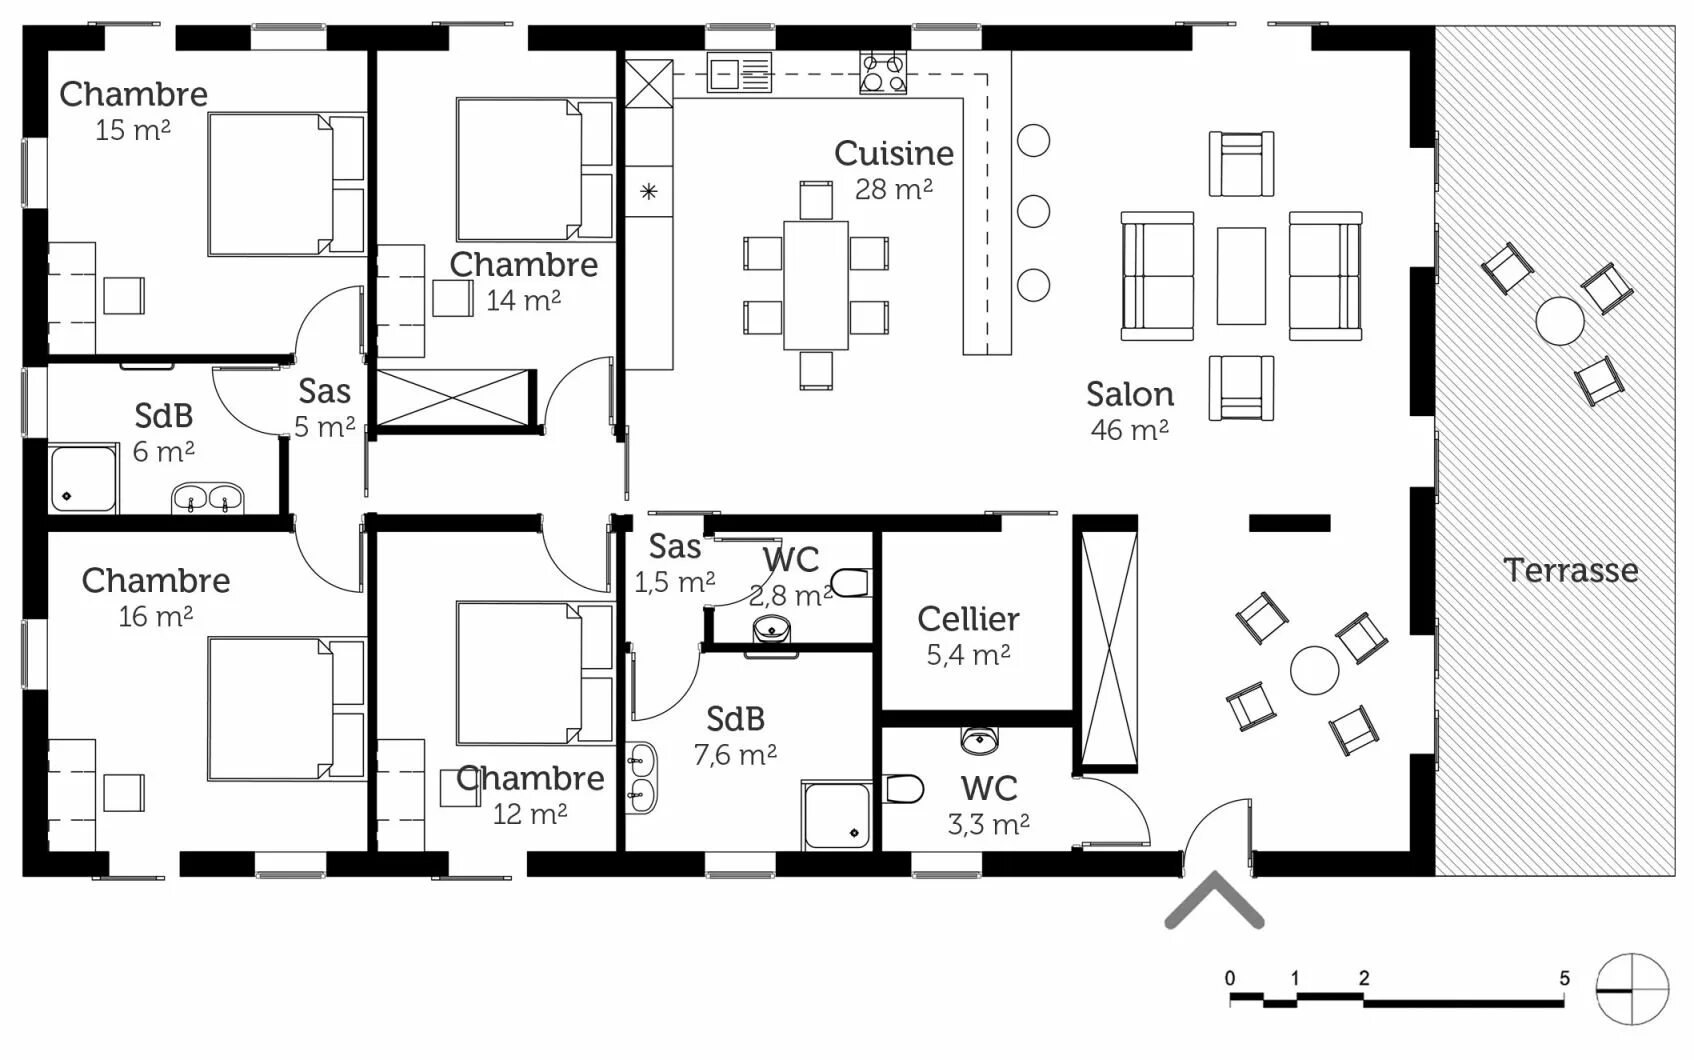 Plan-Maison-moderne-pdf. Maison Lafite план. Maison a 100. Plan d'etage. Pour plan